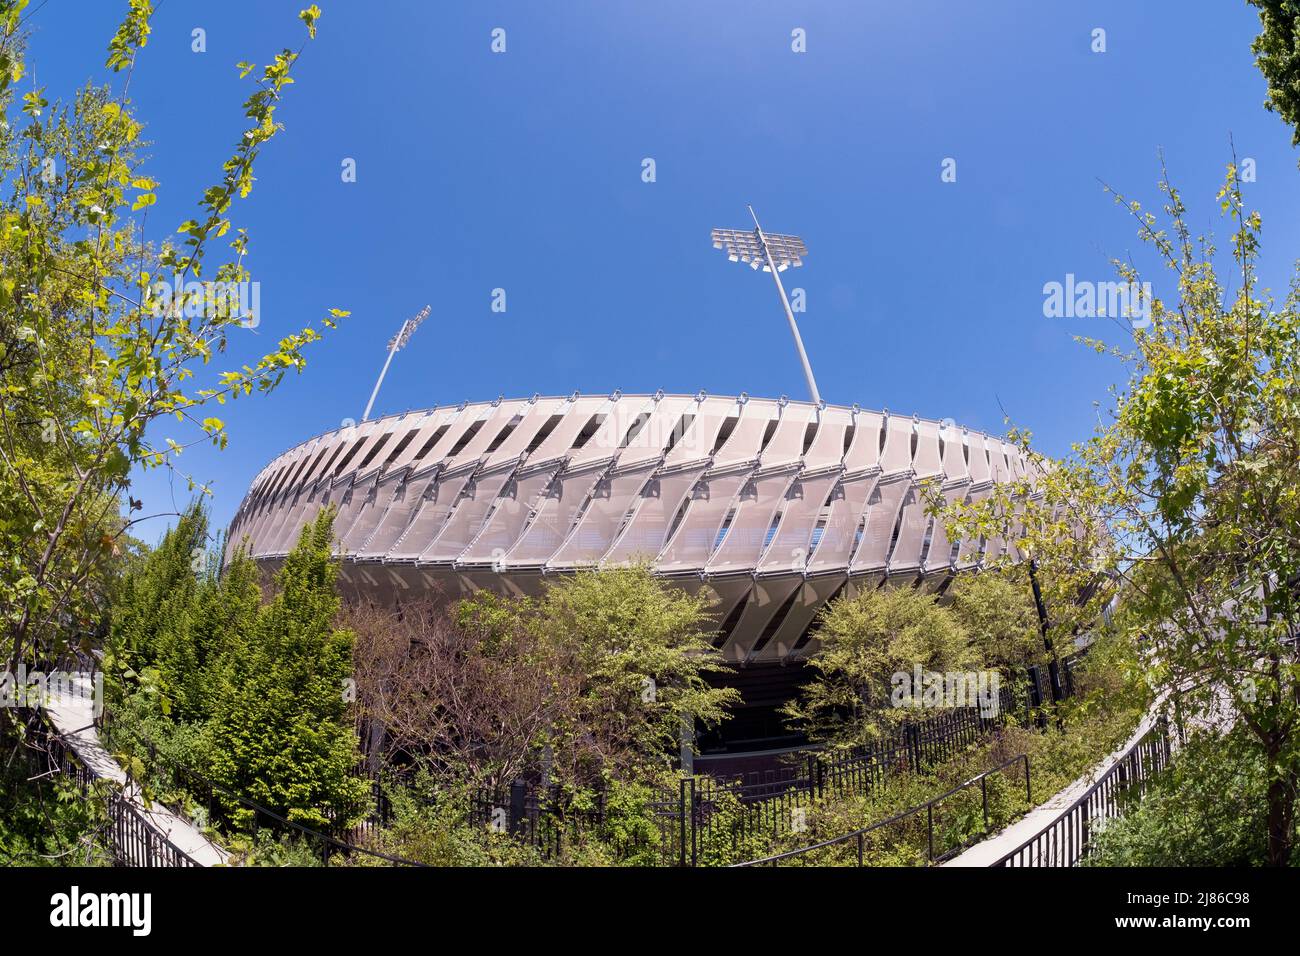 Eine Fischaugenansicht des Grandstand Stadium im USTA Billie jean King National Tennis Center im Flushing Meadows Corona Park in Queens, New York City. Stockfoto